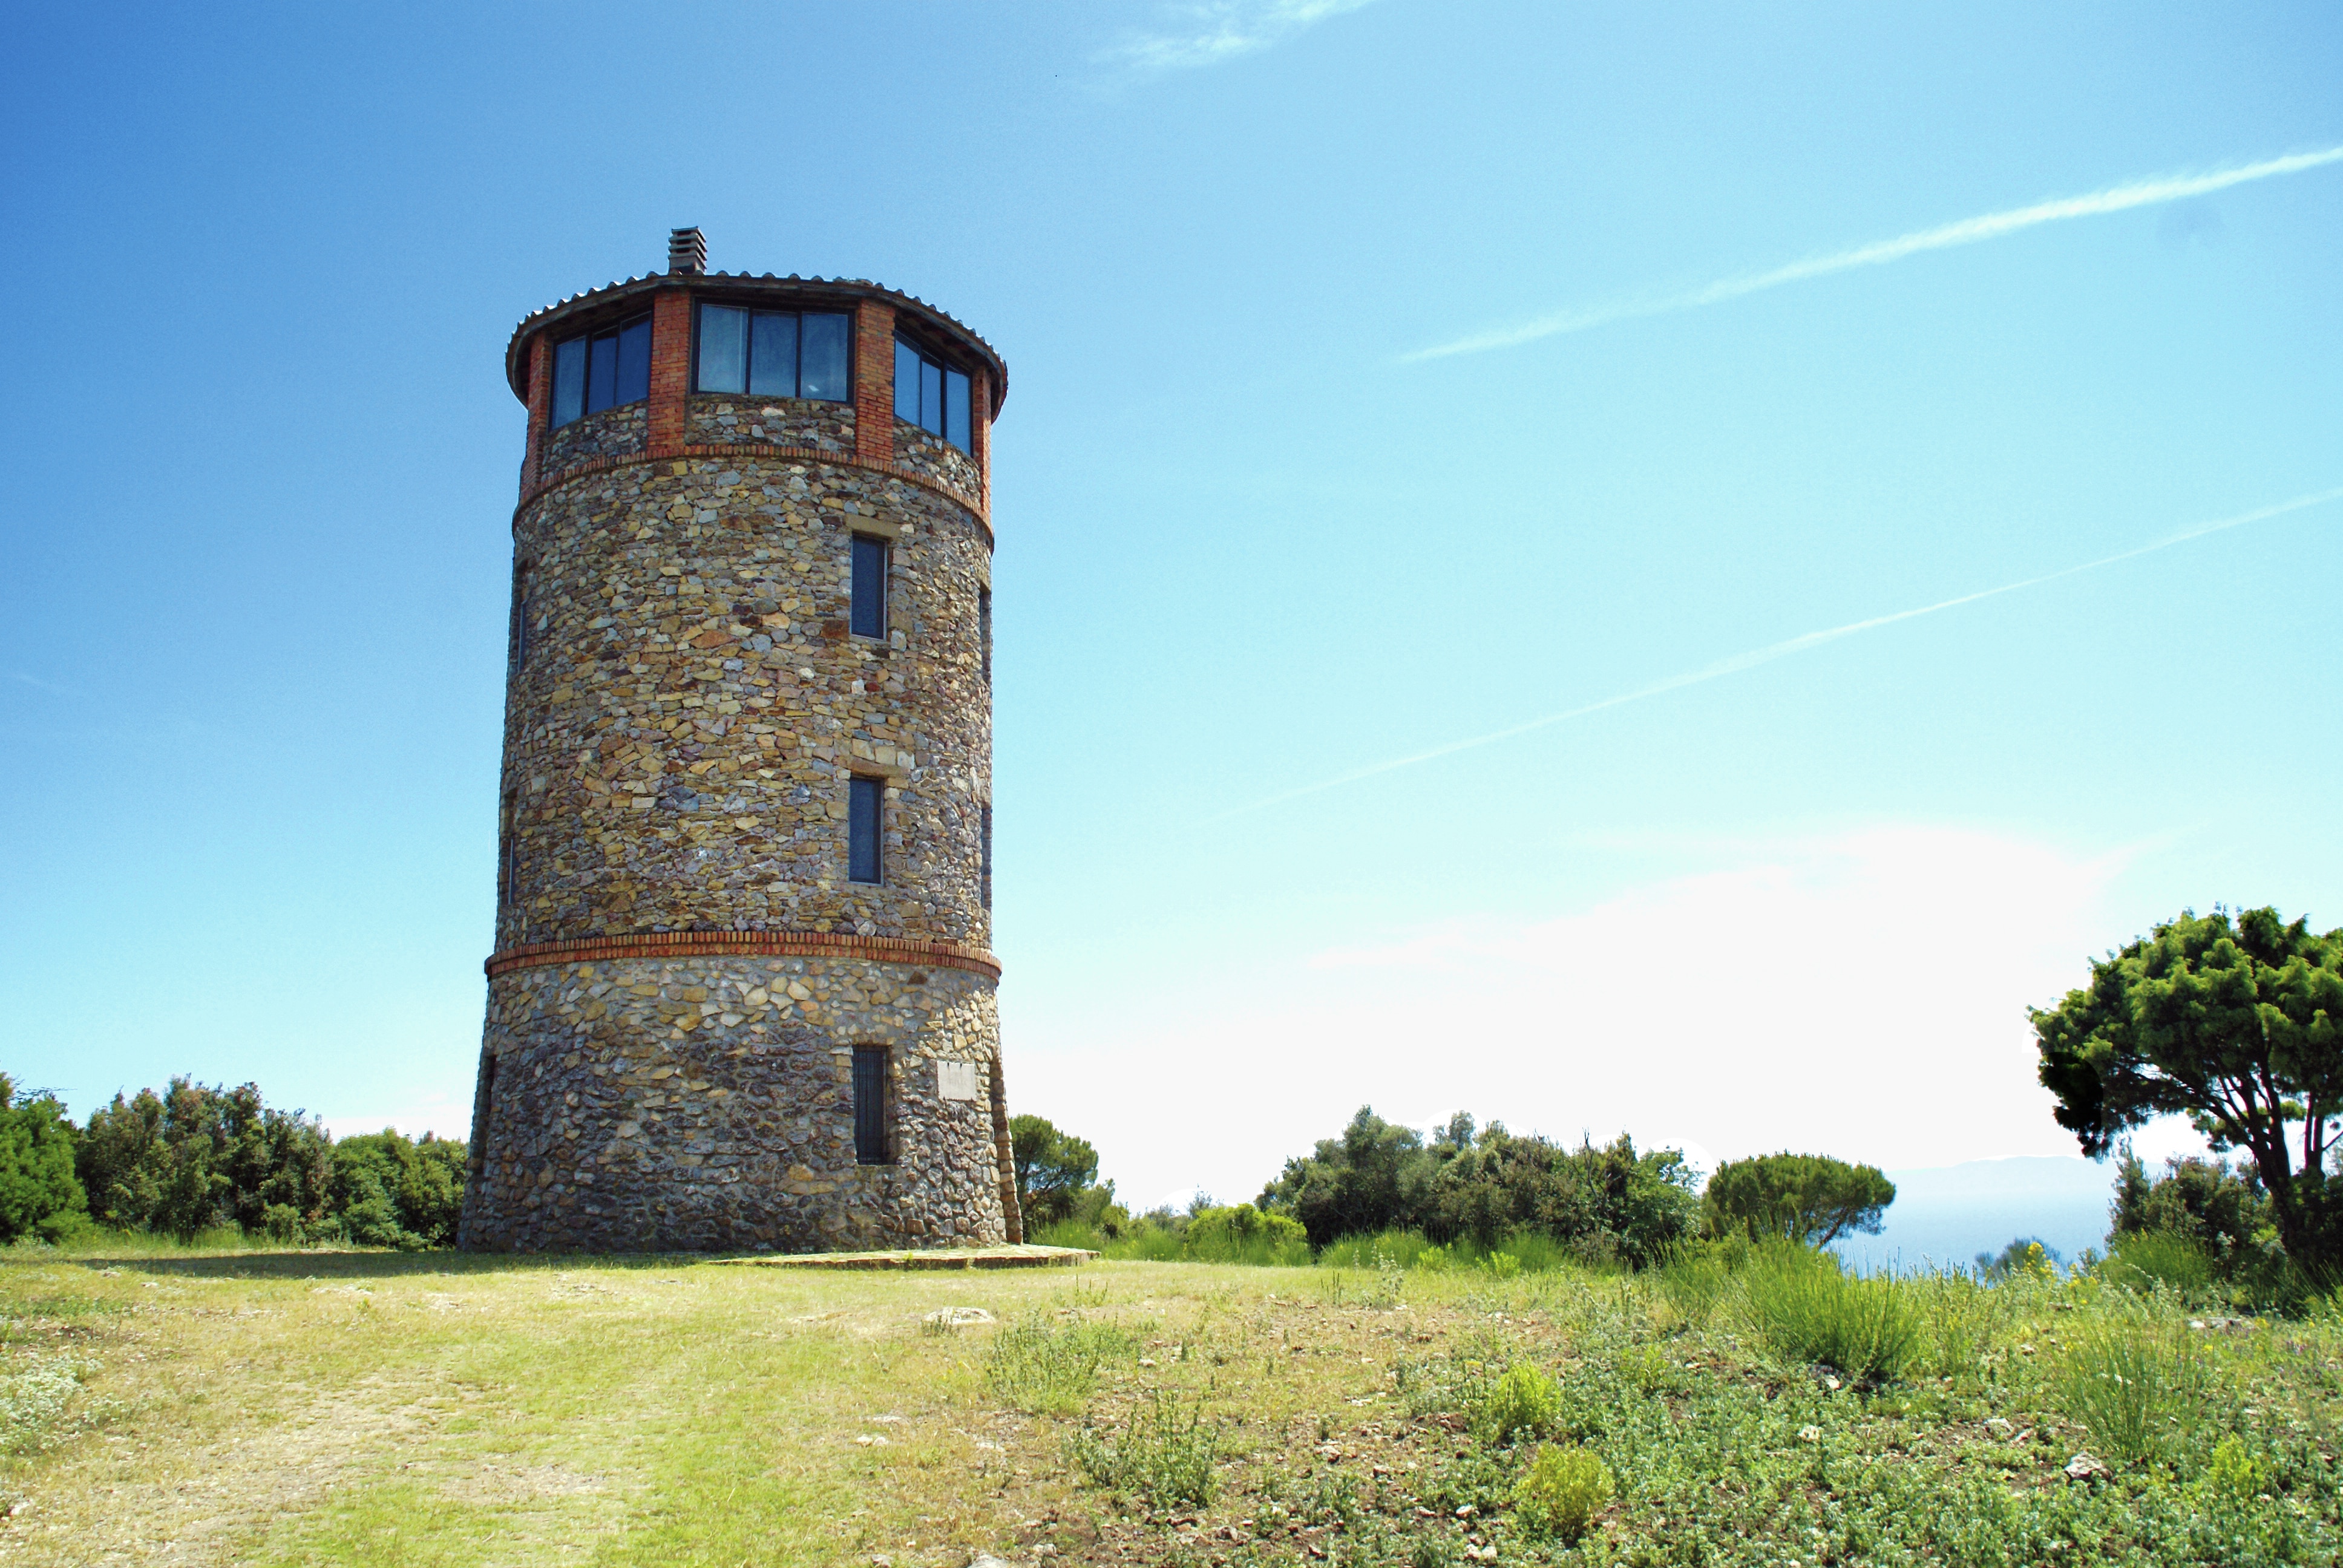 Vakantiewoning Torre Maremma is een oude uitkijktoren midden in het Toscaanse natuurpark Parco Naturale della Maremma